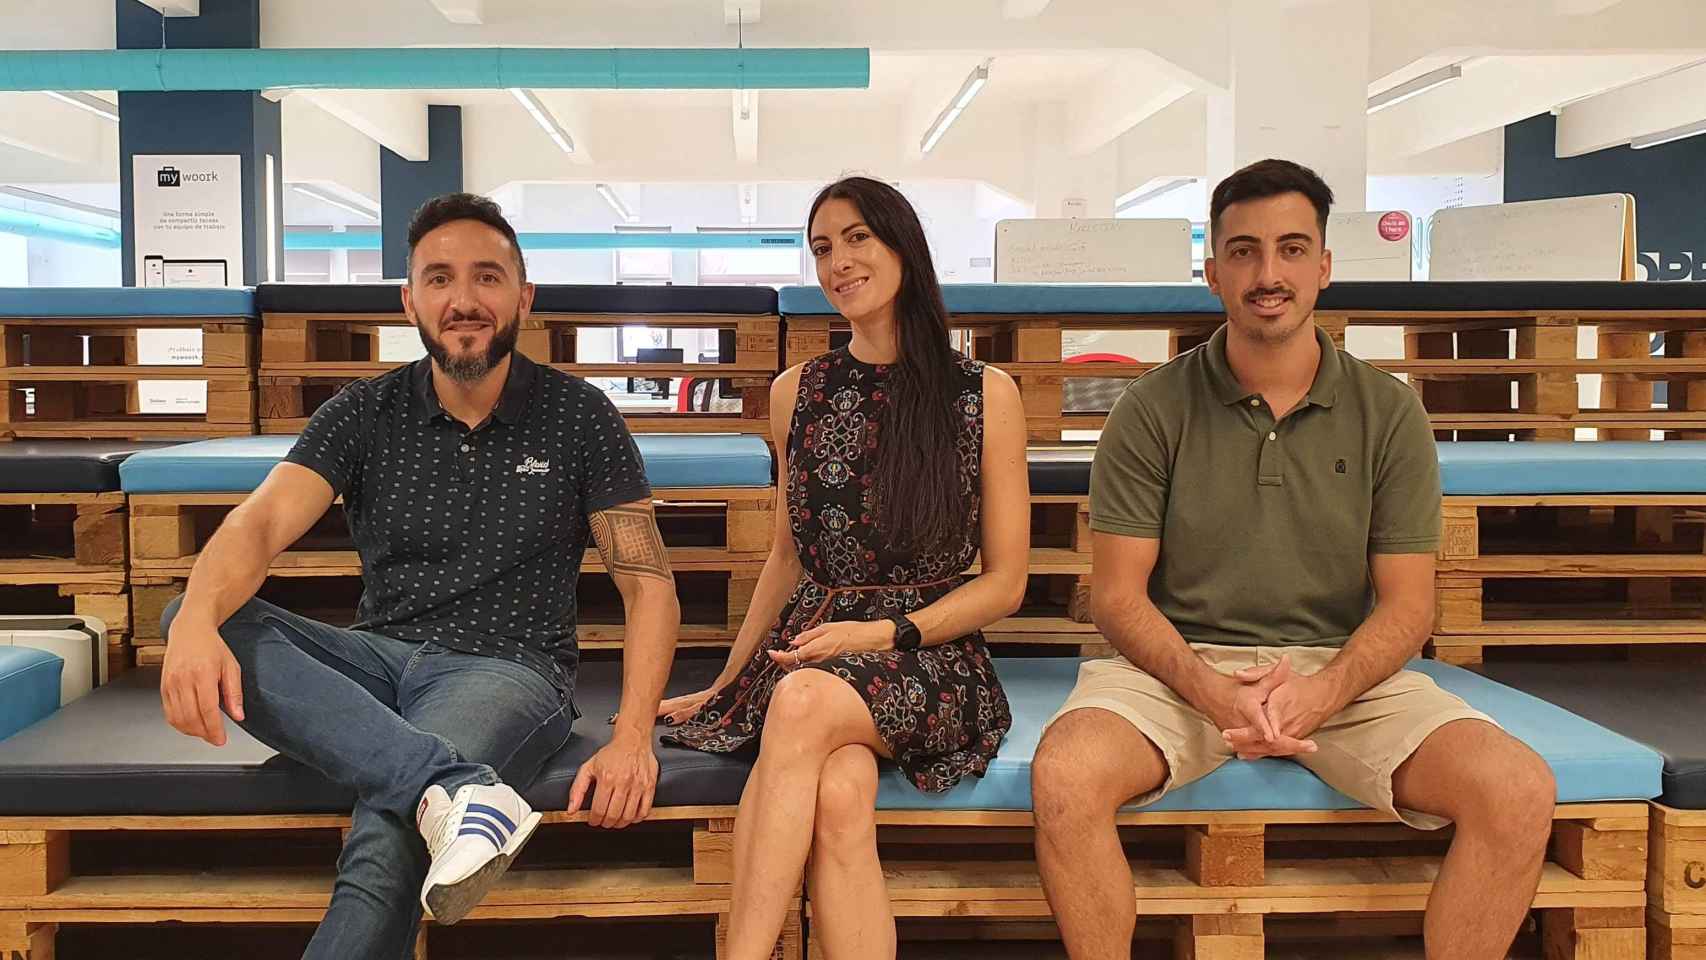 Fernando Ferrer Perruca, Antonella Maggioni y Pablo Crespo Moya son los fundadores de Agrow Analytics.